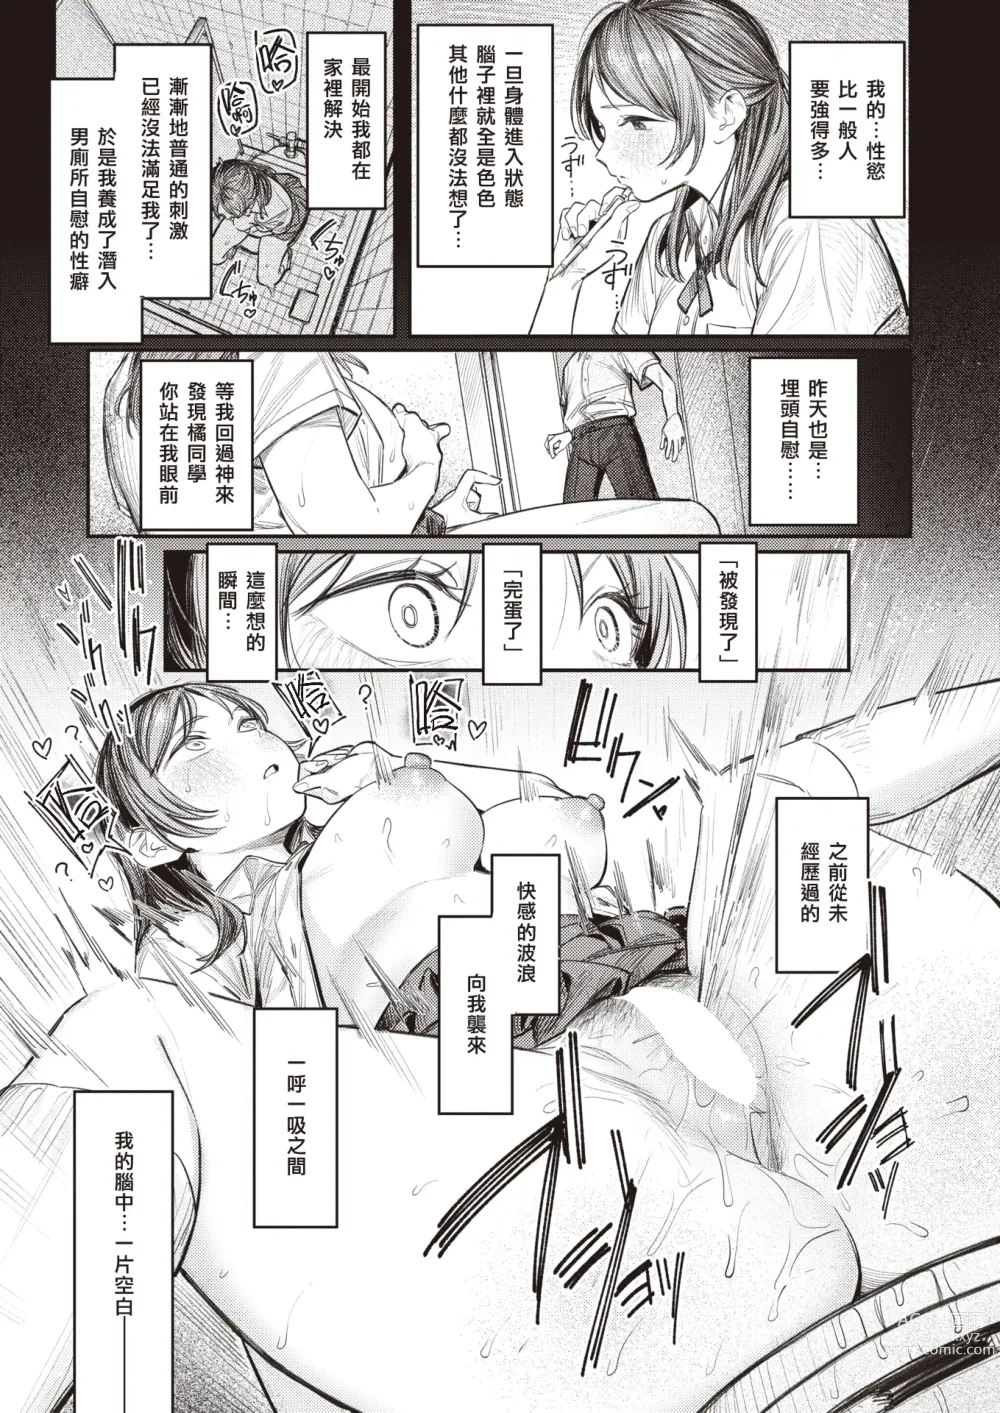 Page 6 of manga 想被窥见